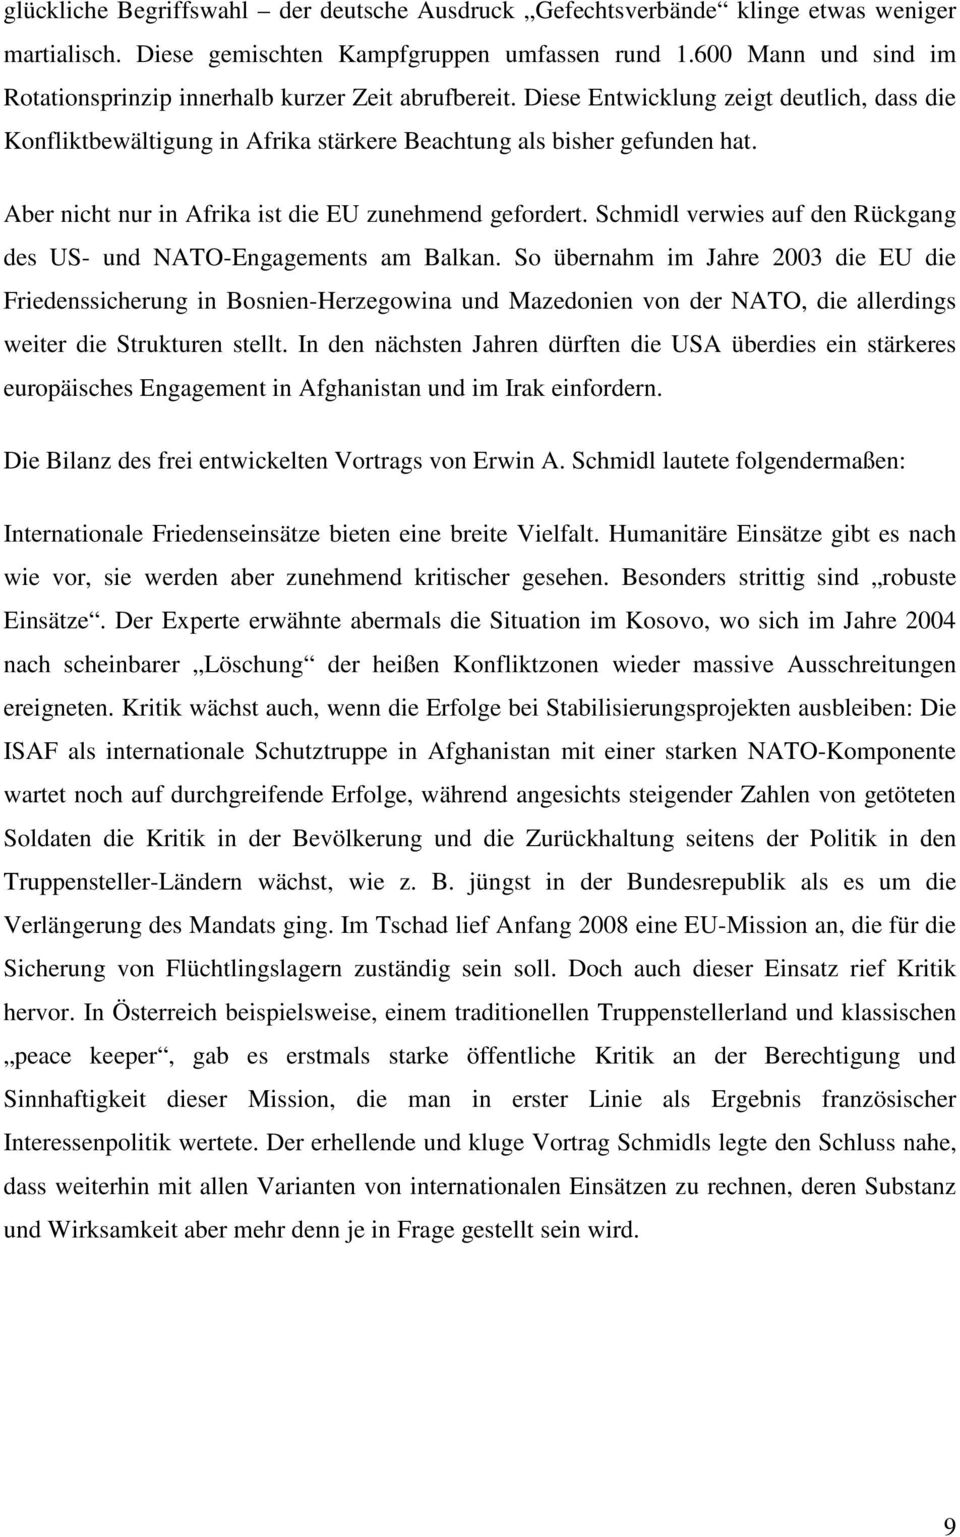 Aber nicht nur in Afrika ist die EU zunehmend gefordert. Schmidl verwies auf den Rückgang des US- und NATO-Engagements am Balkan.